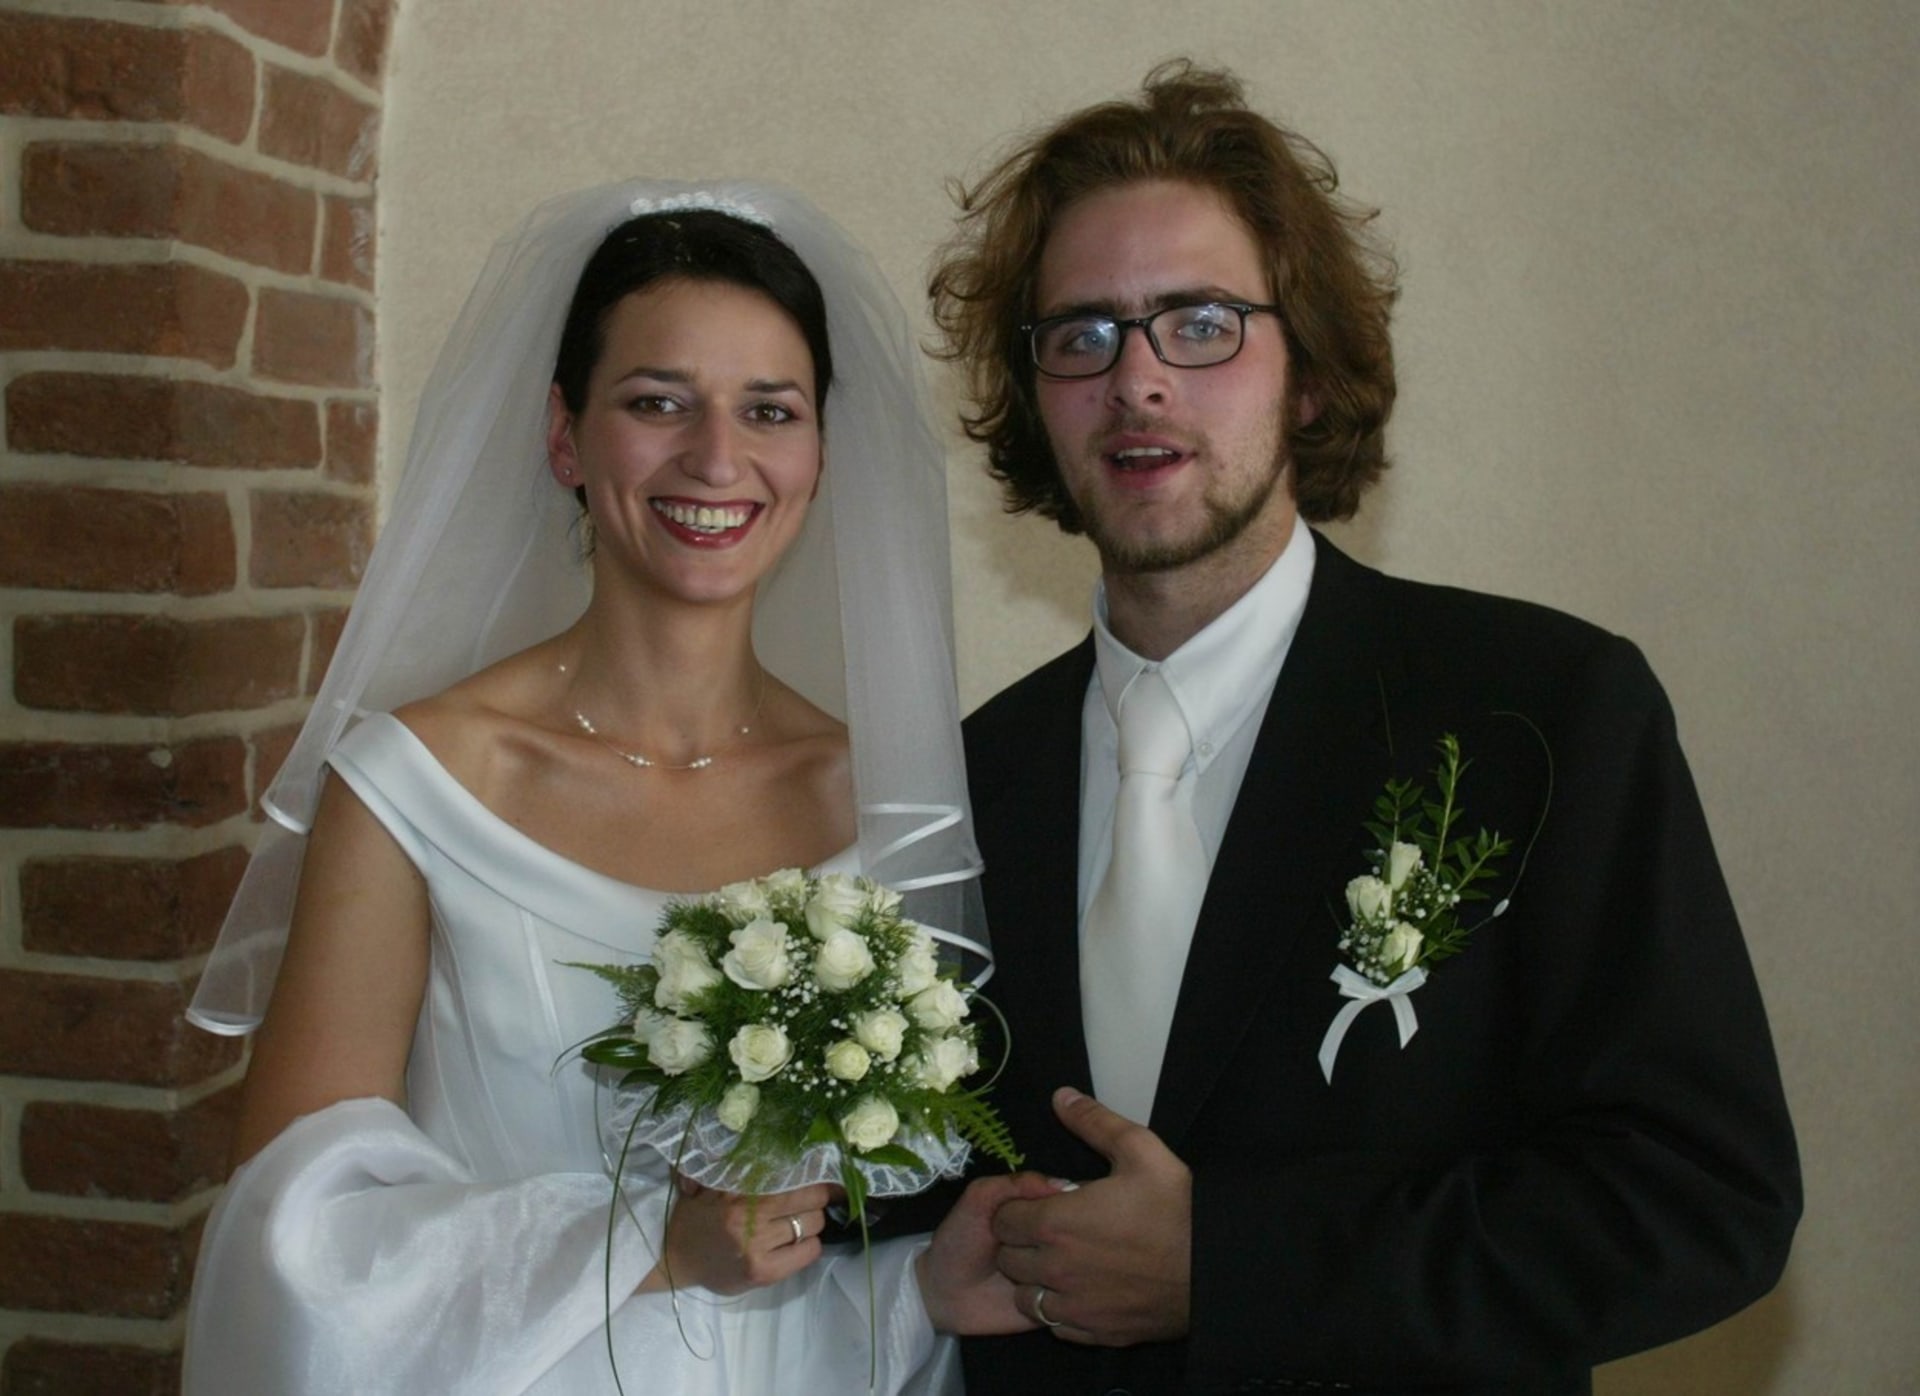 Jejím prvním manželem byl Ondřej Brousek, kterého si vzala v roce 2002 a s nímž má dceru Nelu